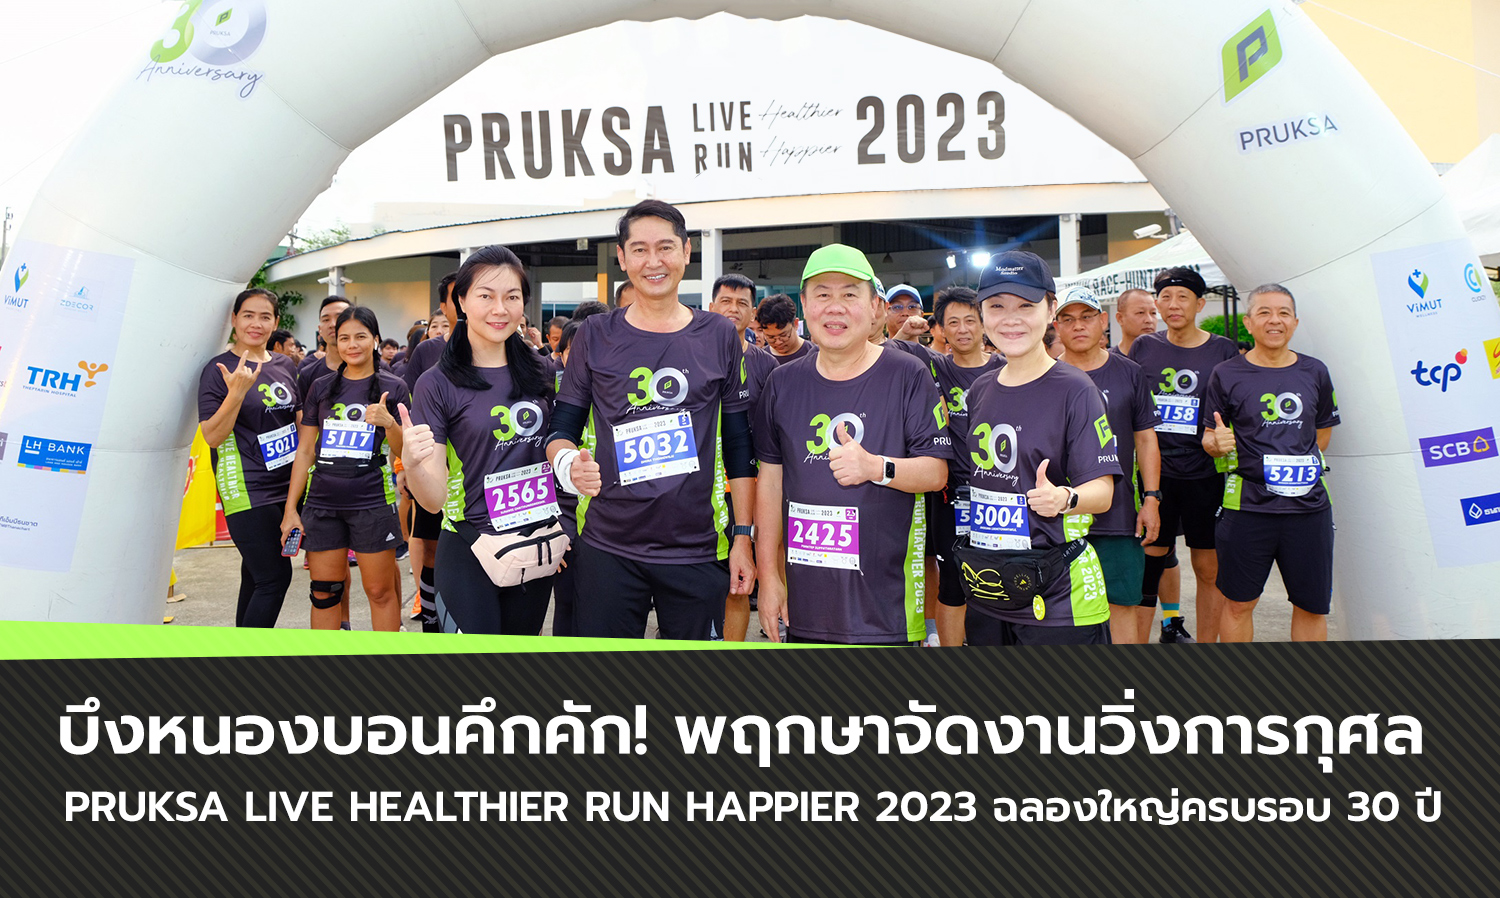 บึงหนองบอนคึกคัก พฤกษาจัดงานวิ่งการกุศล  PRUKSA LIVE Healthier RUN Happier 2023 ฉลองใหญ่ครบรอบ 30 ปี